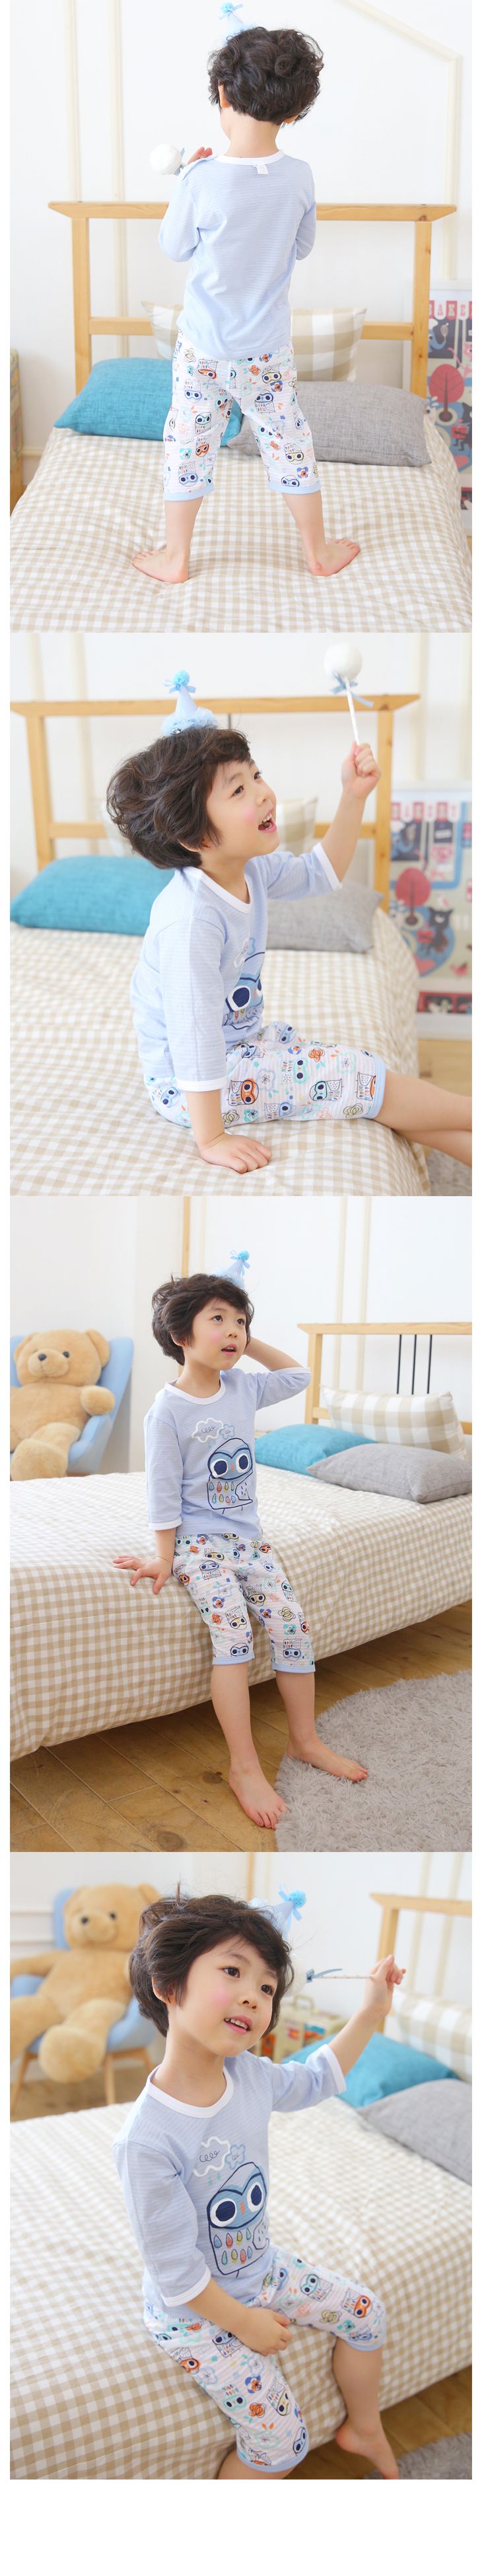 韓國製七分袖家居服套裝組-PUCO(彩繪貓頭鷹)藍